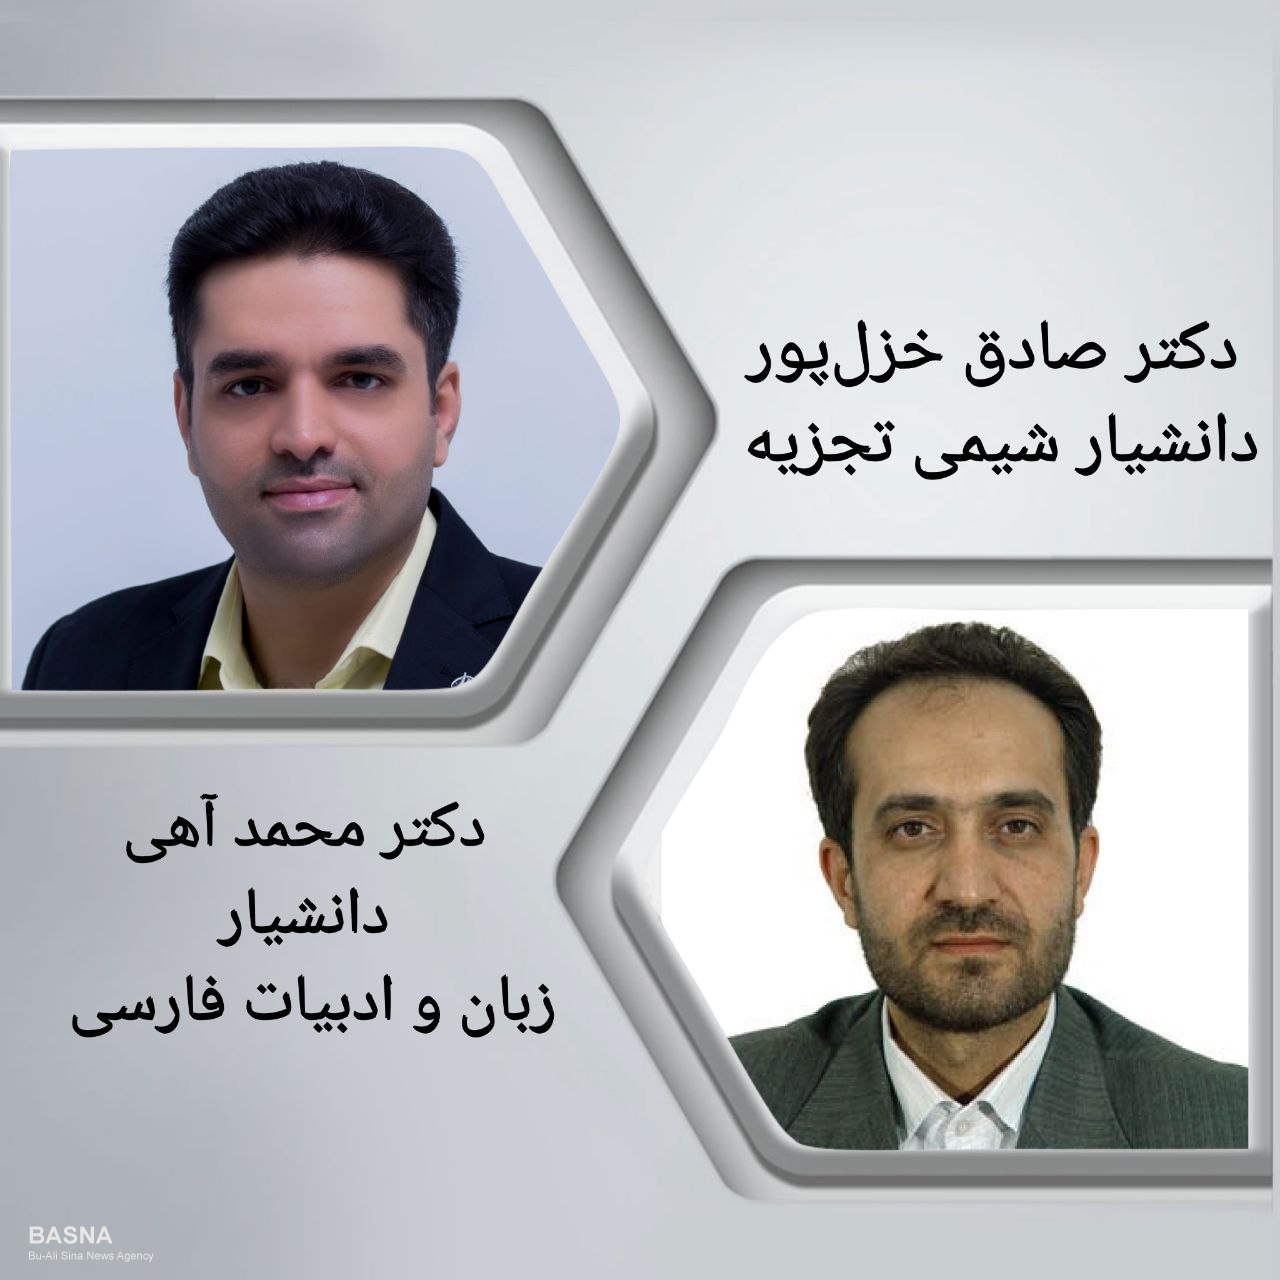 دکتر صادق خزل‌پور و دکتر محمد آهی به مرتبه دانشیاری ارتقاء یافتند